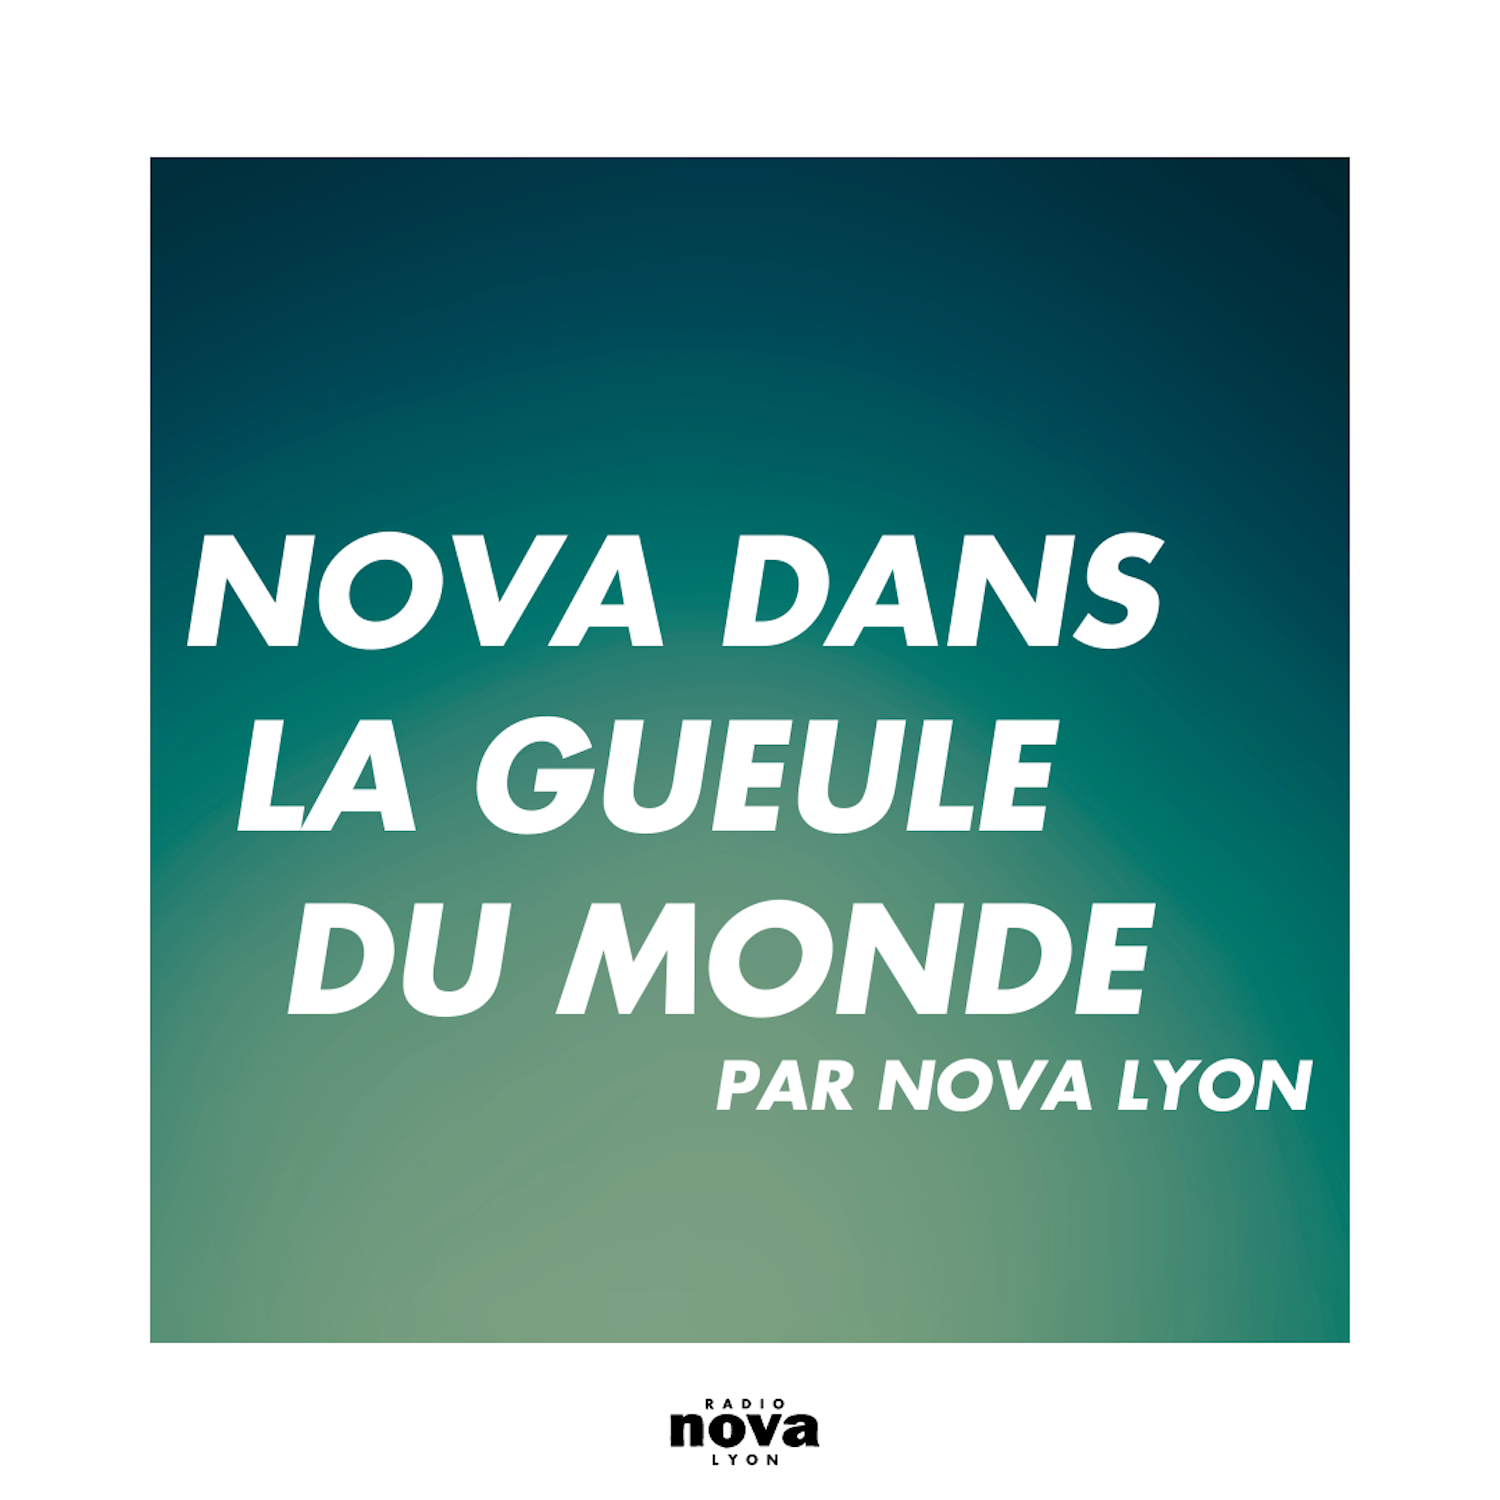 Nova dans la gueule du monde'